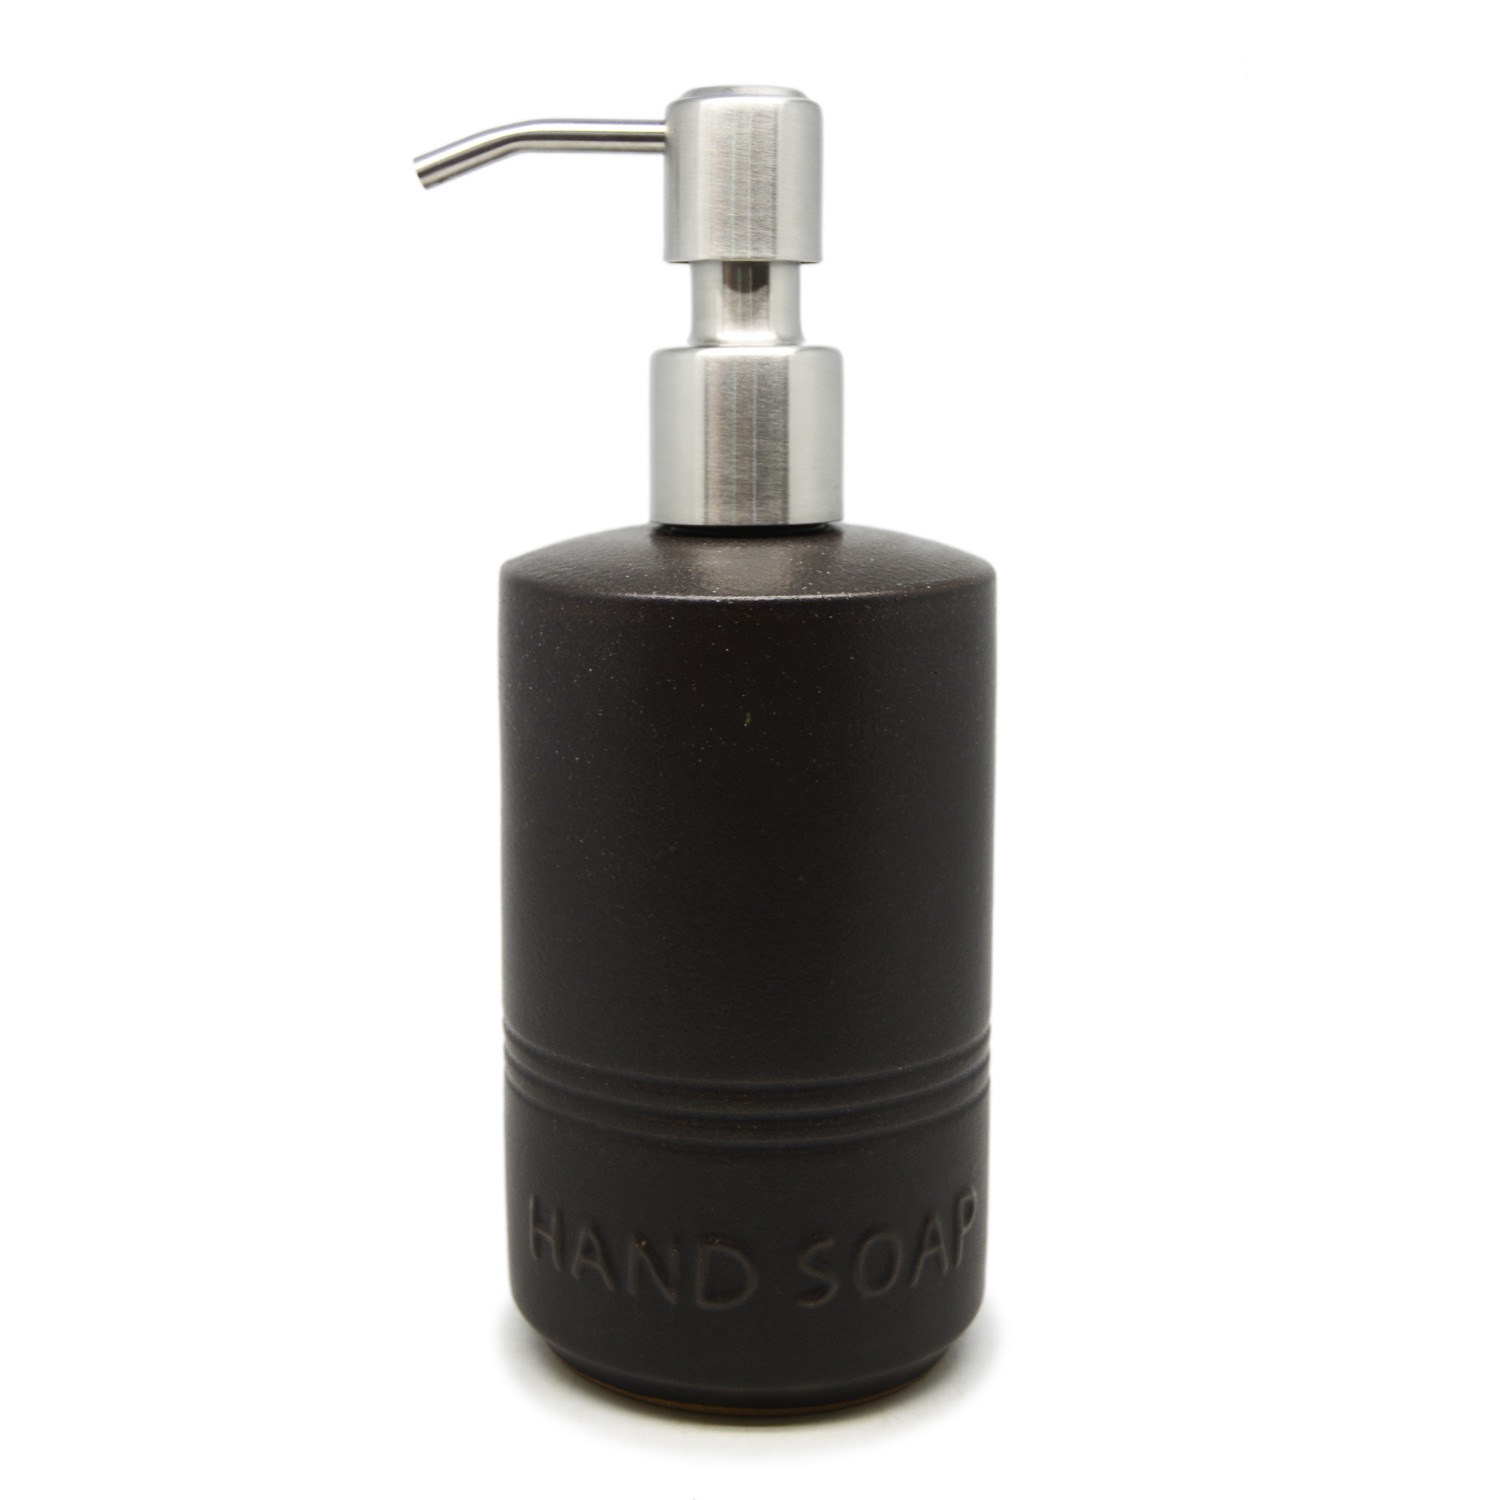 Pillar Liquid Dispenser - Hand Soap - Stainless Steel Pump